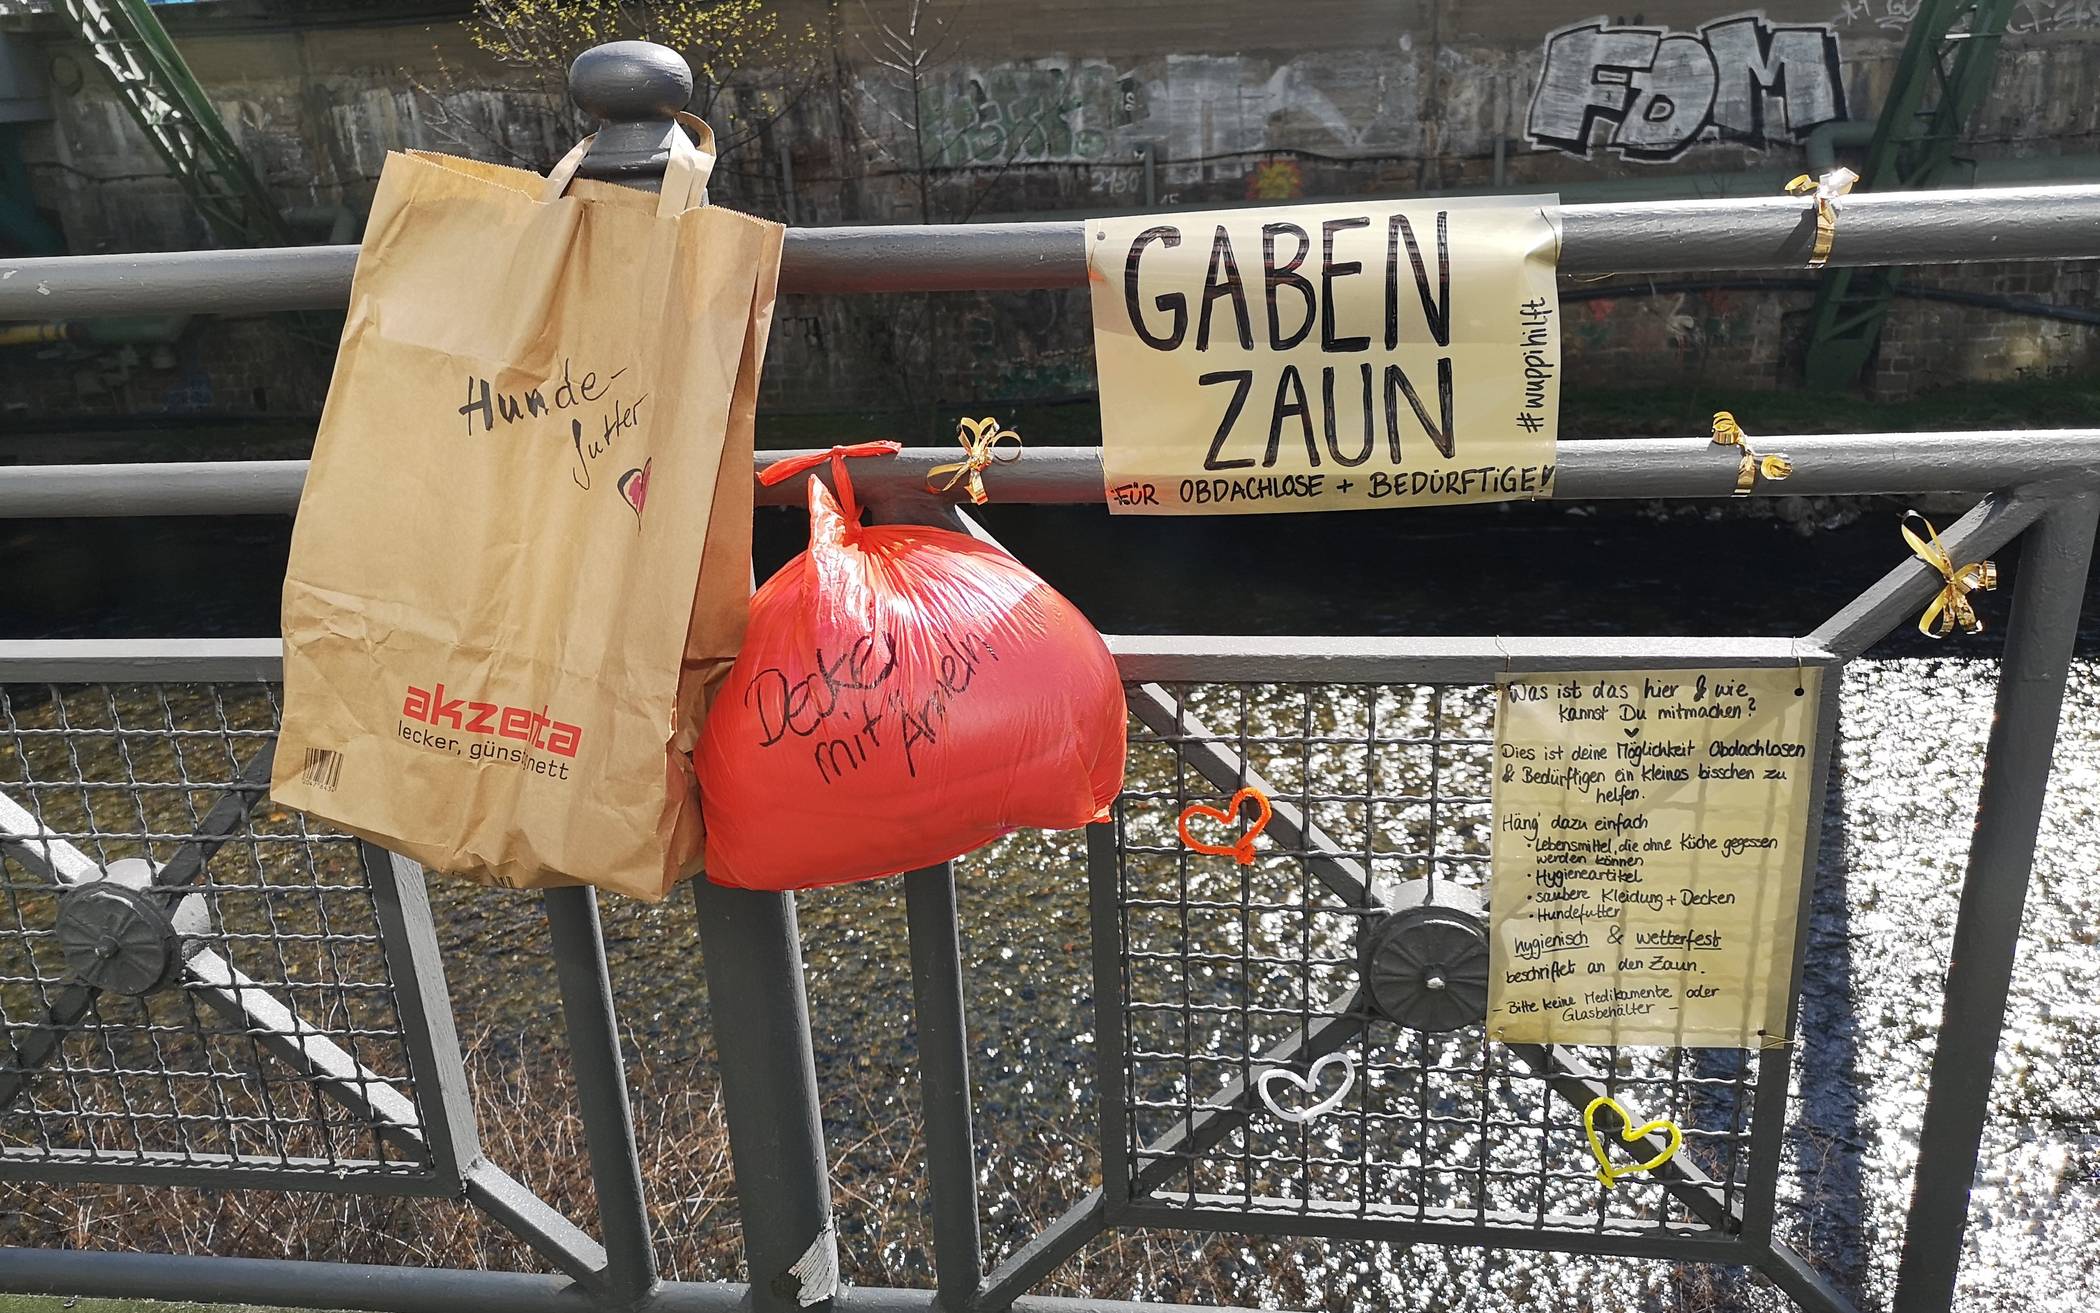  Der Gabenzaun in der Nähe des Schwebebahn-Hauptbahnhofs in Elberfeld. Hier wurden während des Corona-Lockdowns Lebensmittel und Kleidung von Wuppertalern für Obdachlose deponiert.  